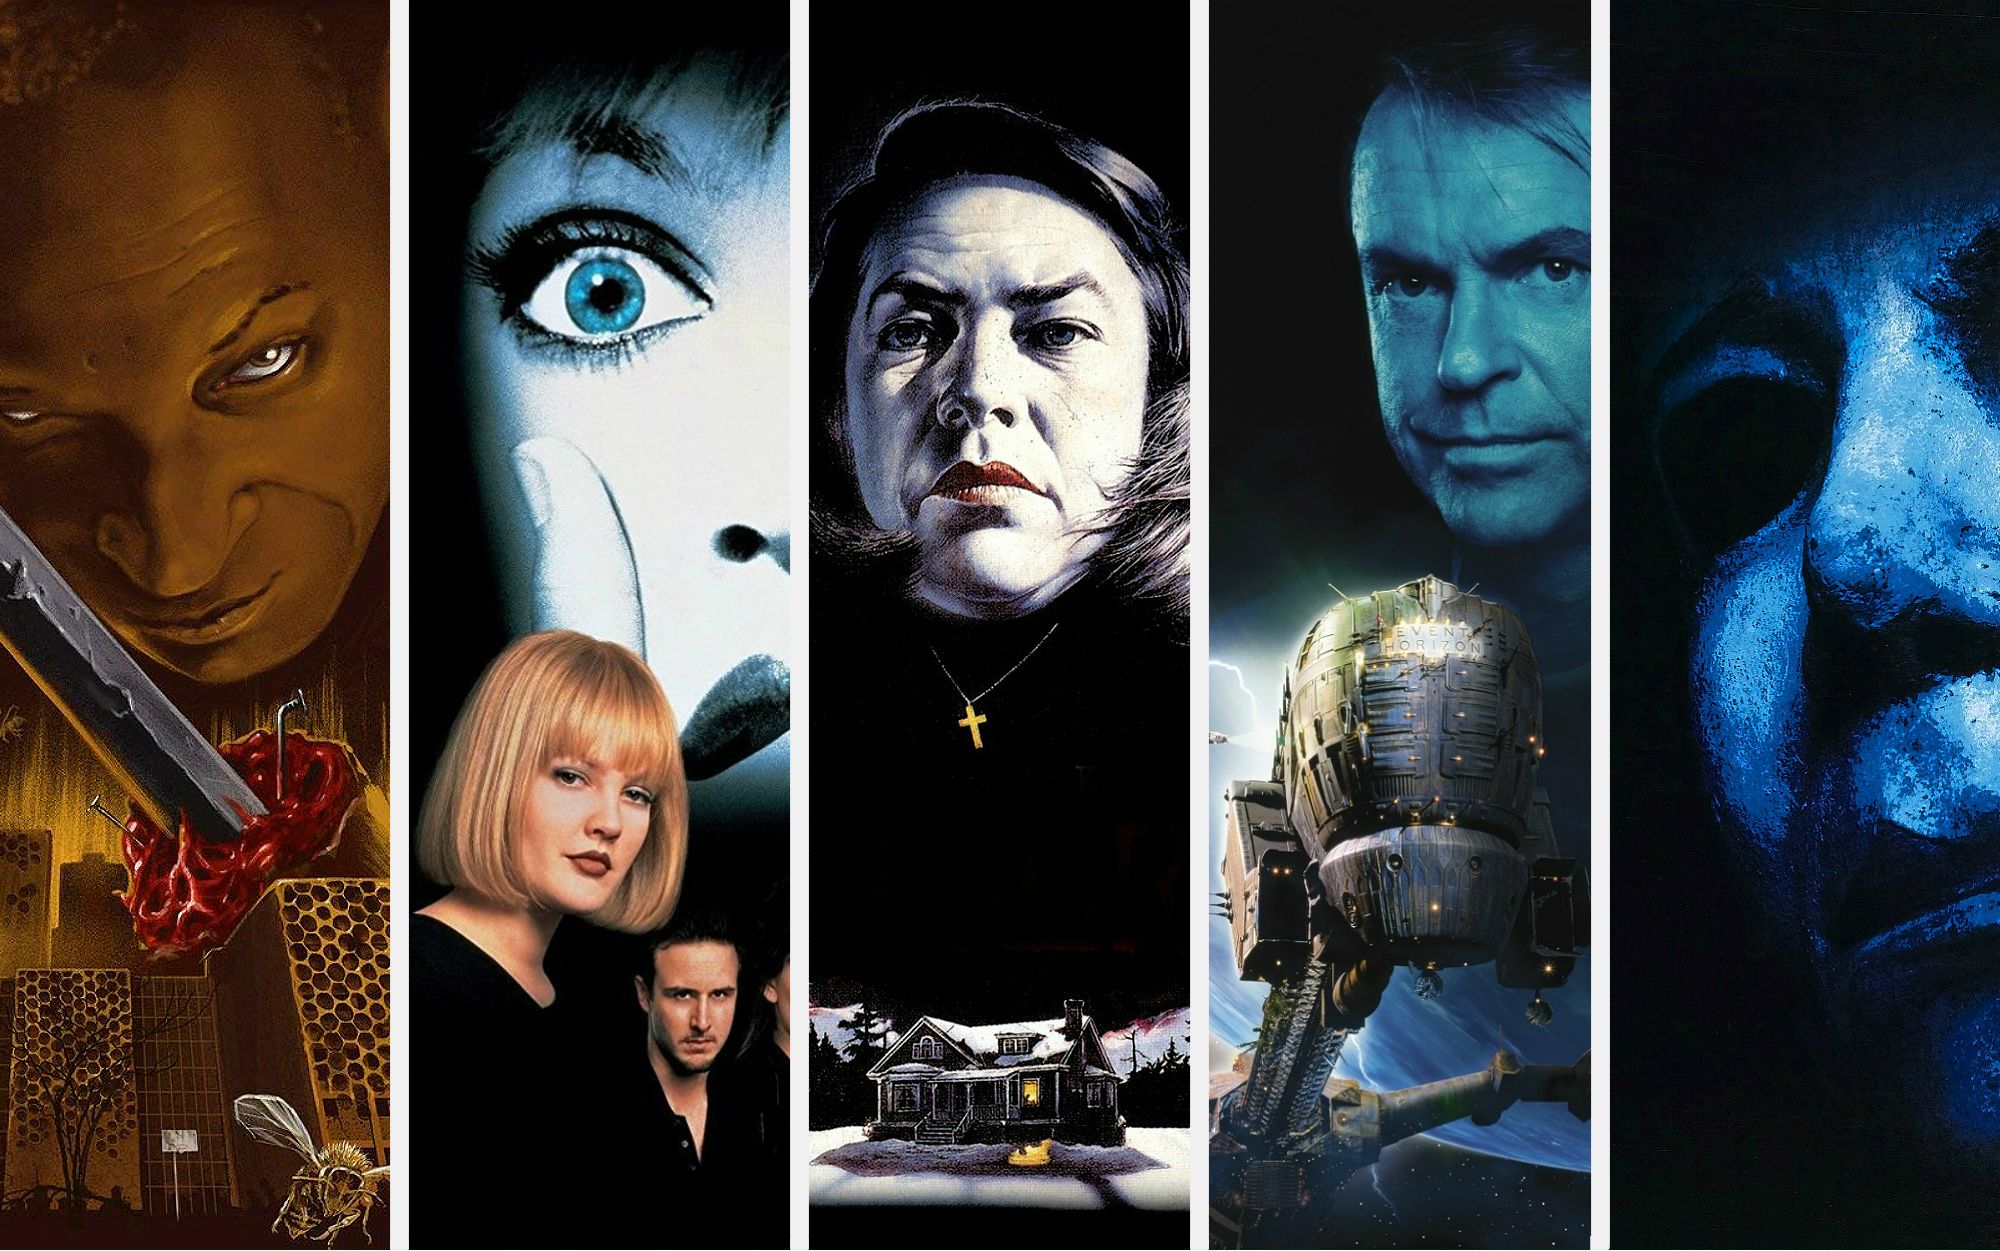 10 Best Horror Movies On Netflix